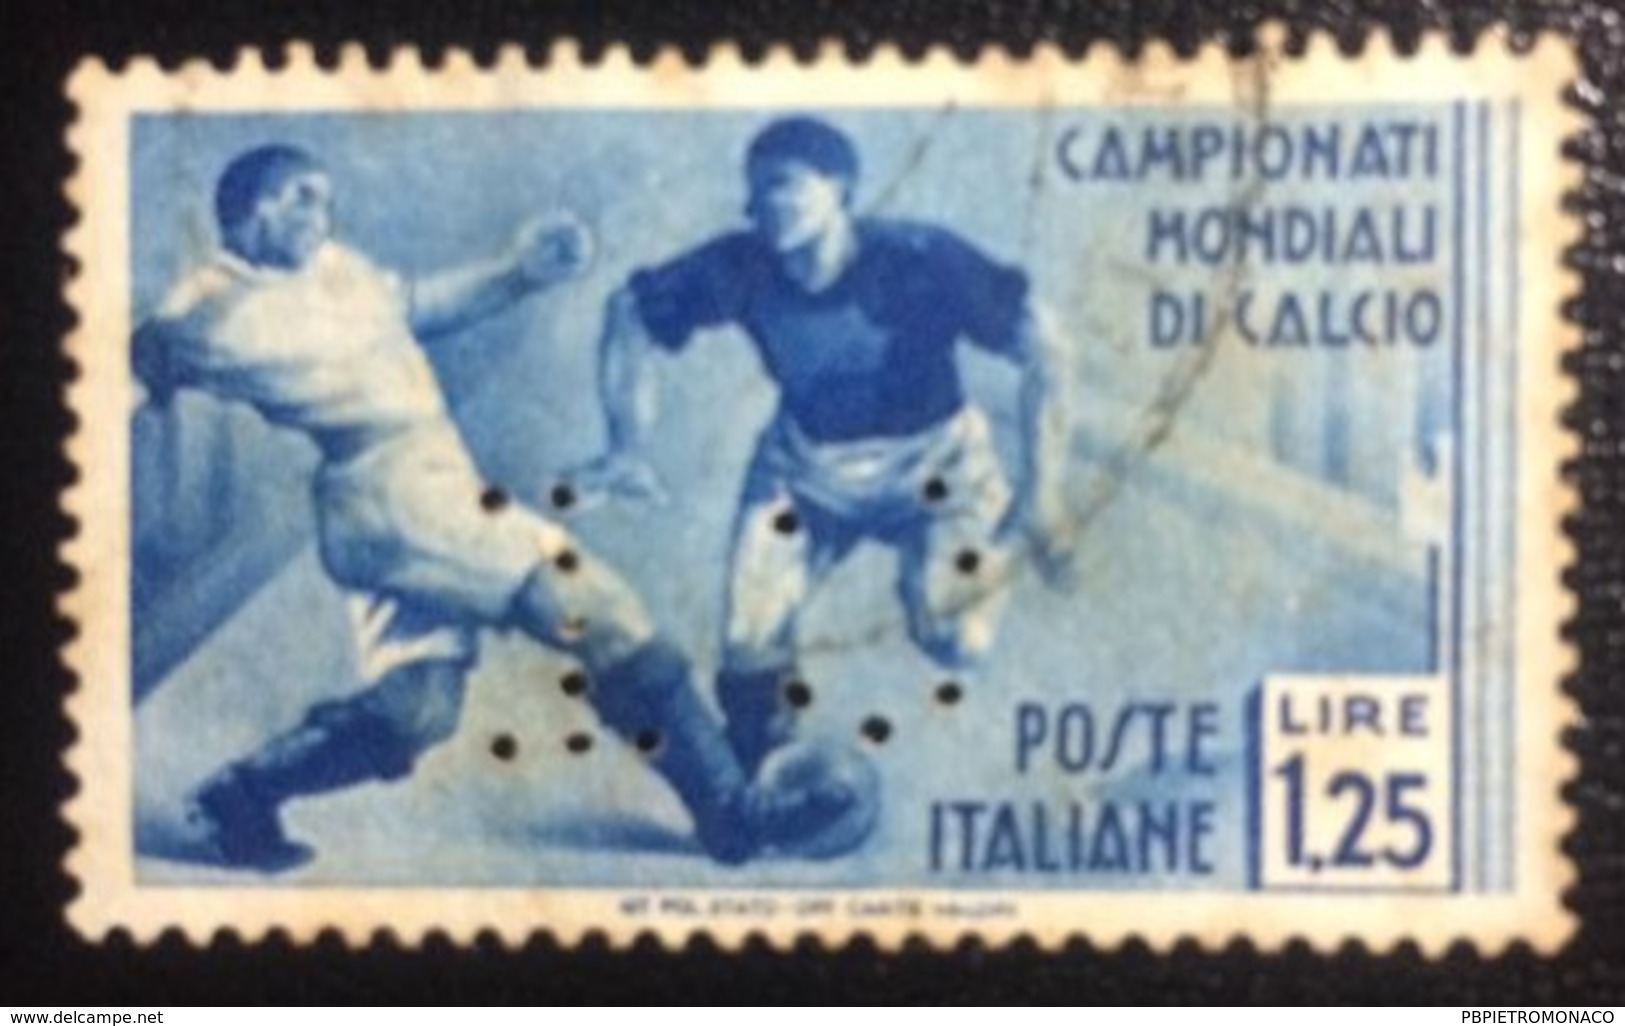 REGNO ITALIA  - 2º Campionato Mondiale Di Calcio Emesso Il 24 Maggio 1934 1,25 L. - Scarto-  Perforé Perfin Perforato - Oblitérés